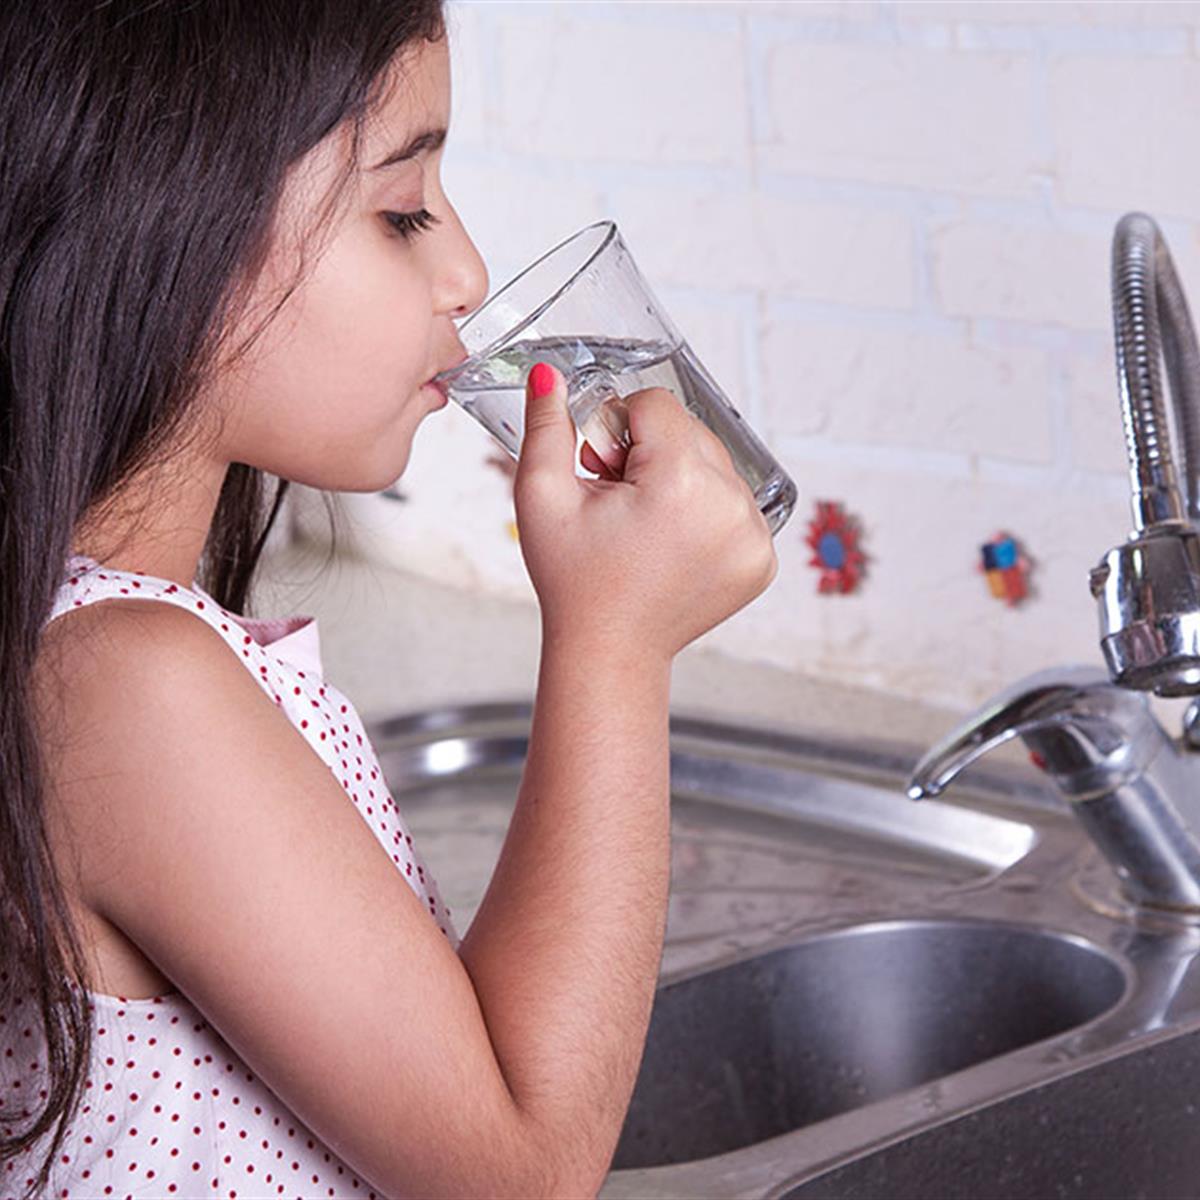 https://www.healthychildren.org/SiteCollectionImagesArticleImages/is-your-drinking-water-safe.jpg?RenditionID=6